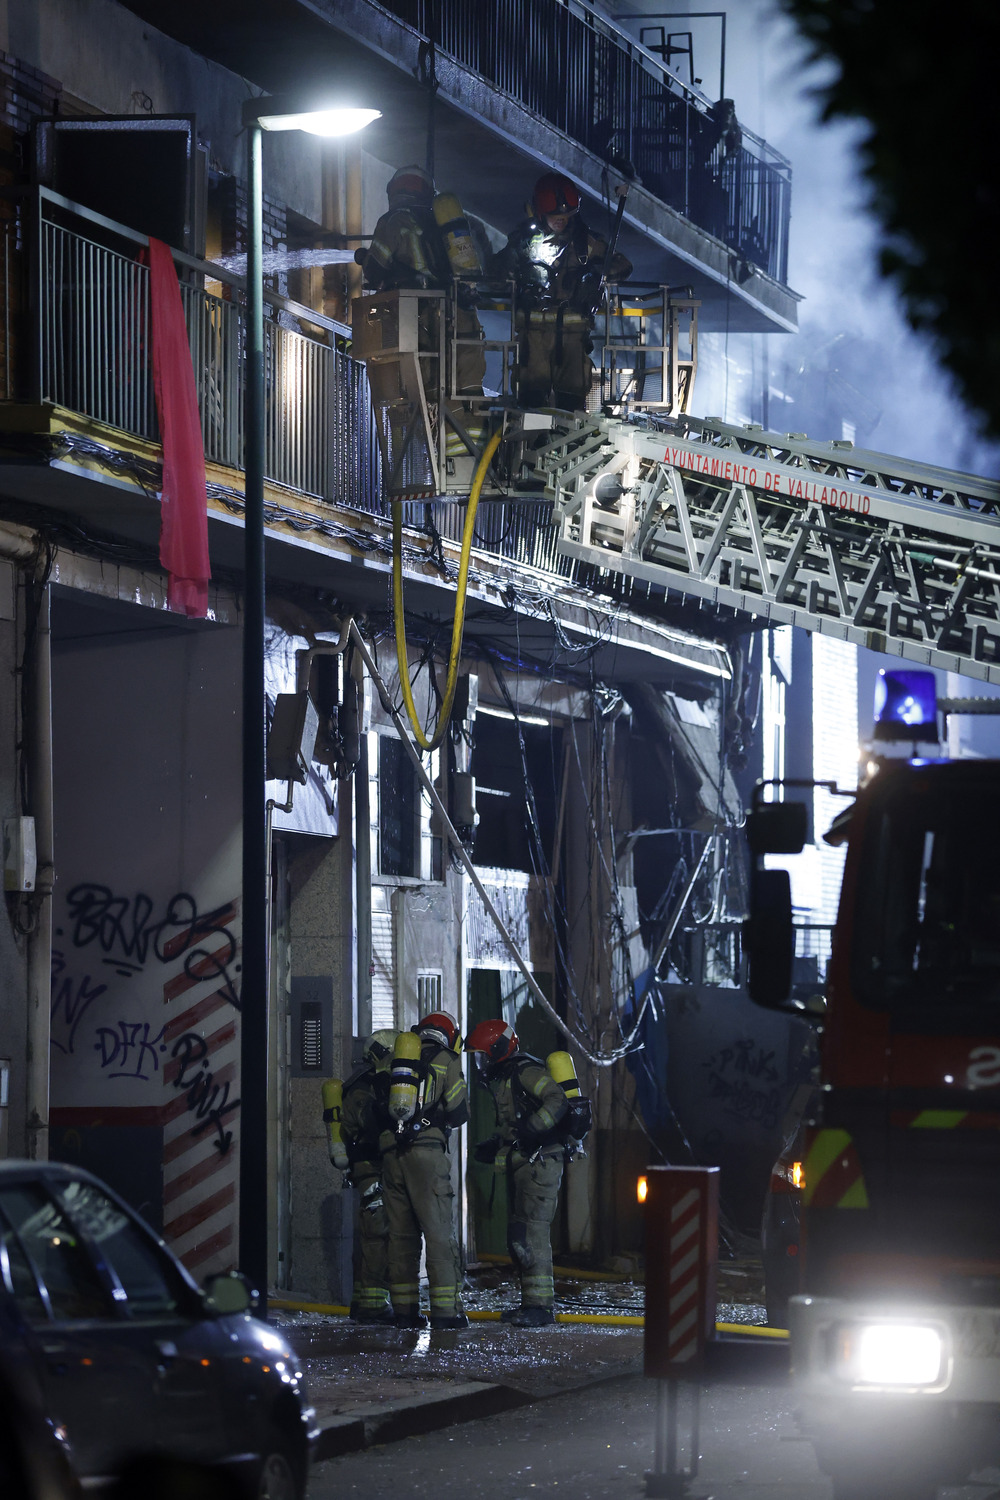 Una explosión de gas incendia un bloque de viviendas en Valladolid  / AGENCIAS